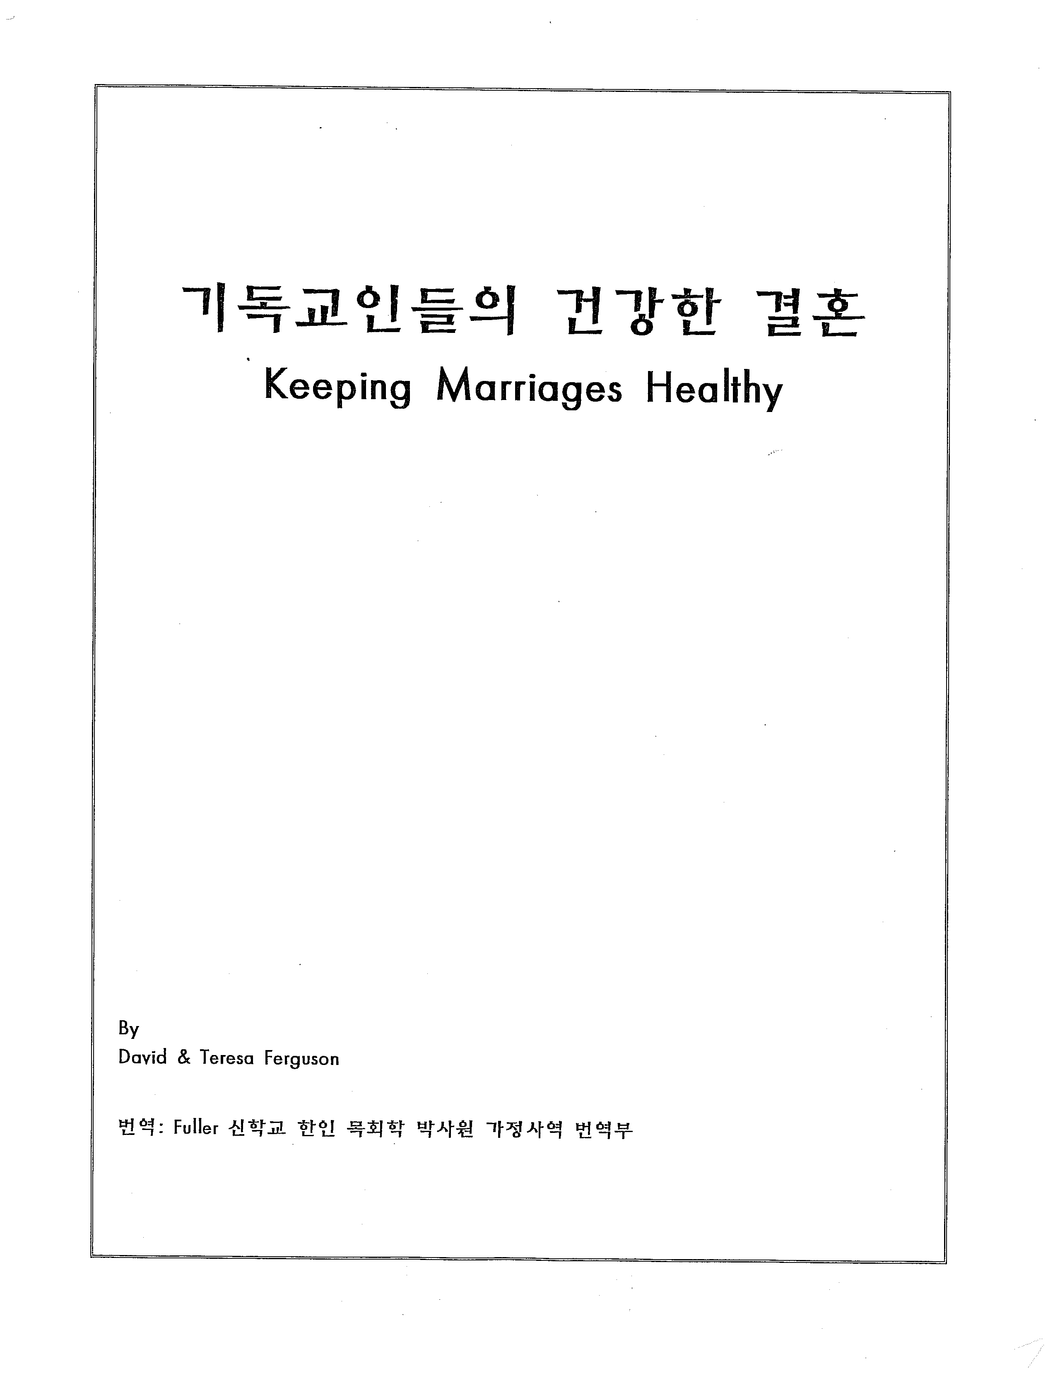 Keeping Marriages Healthy Workbook (Korean)